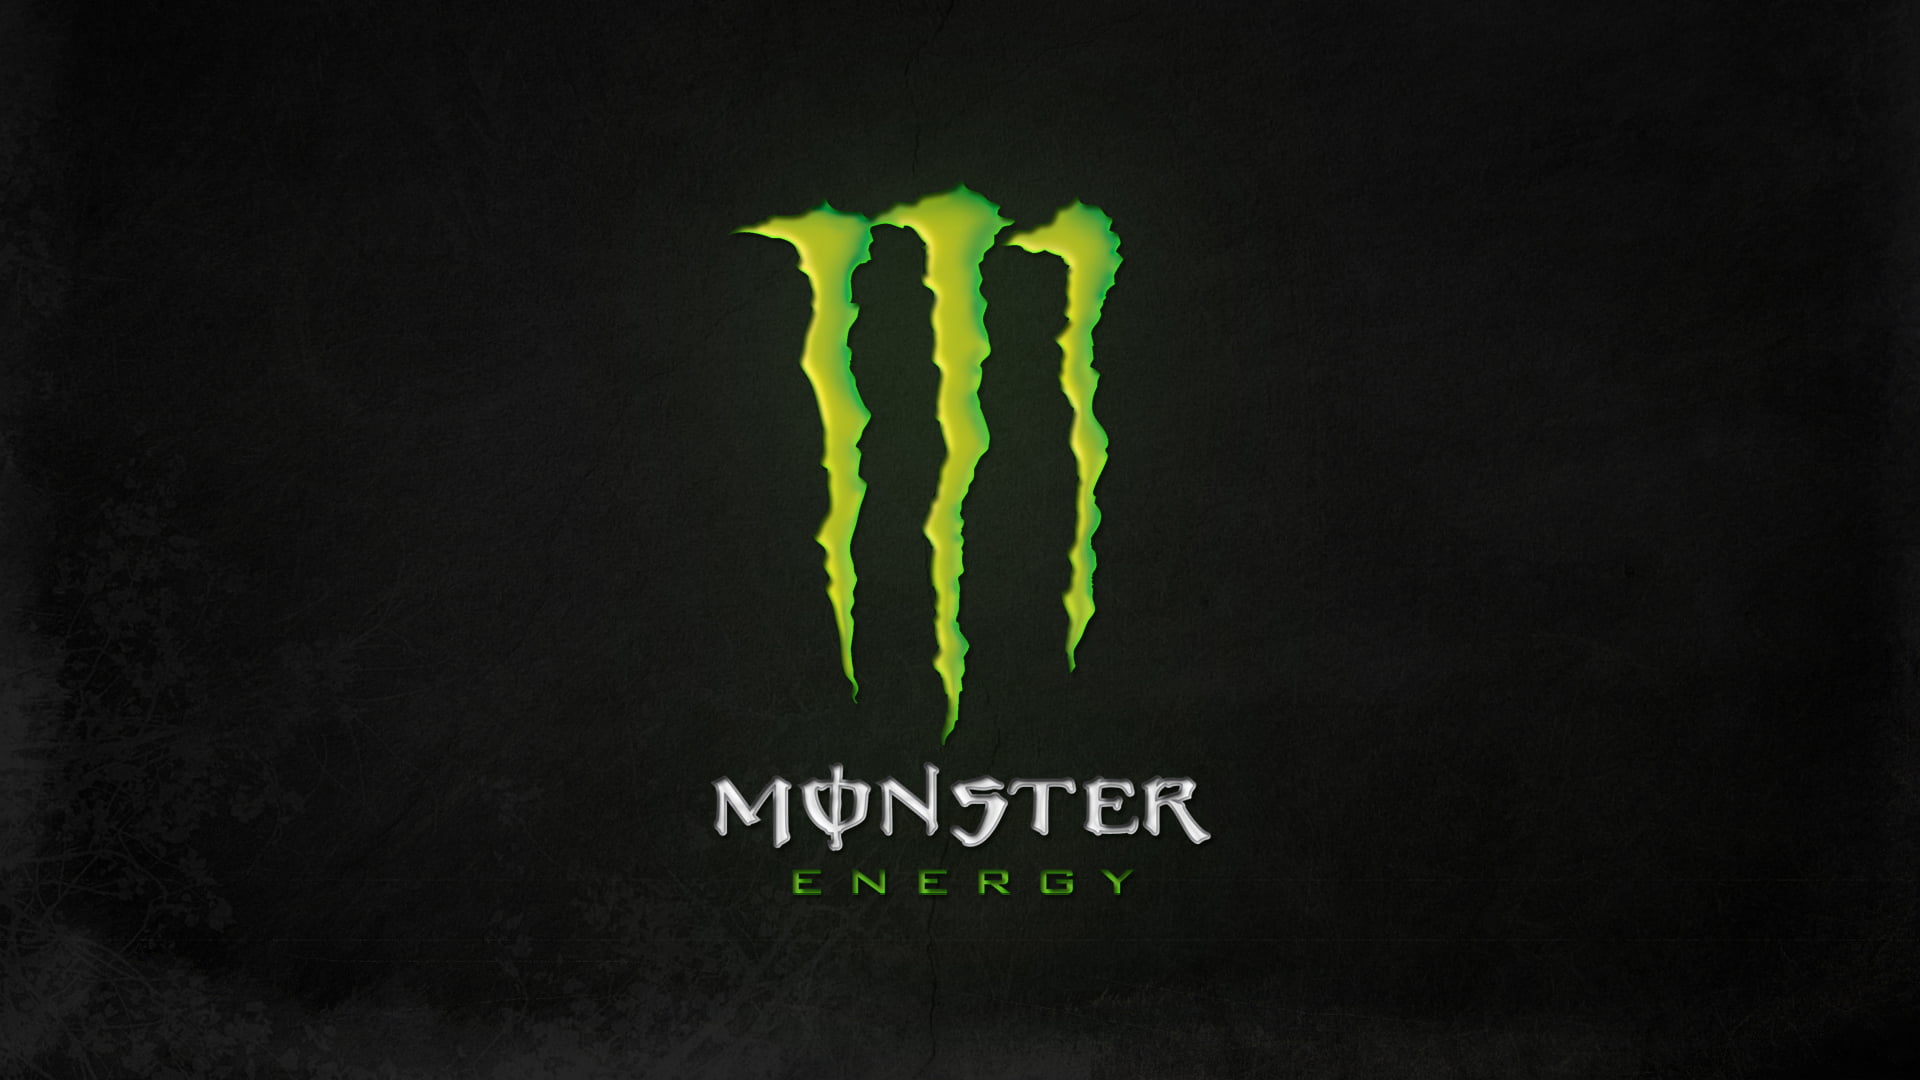 Monster Energy logo, green, background, blackboard, business